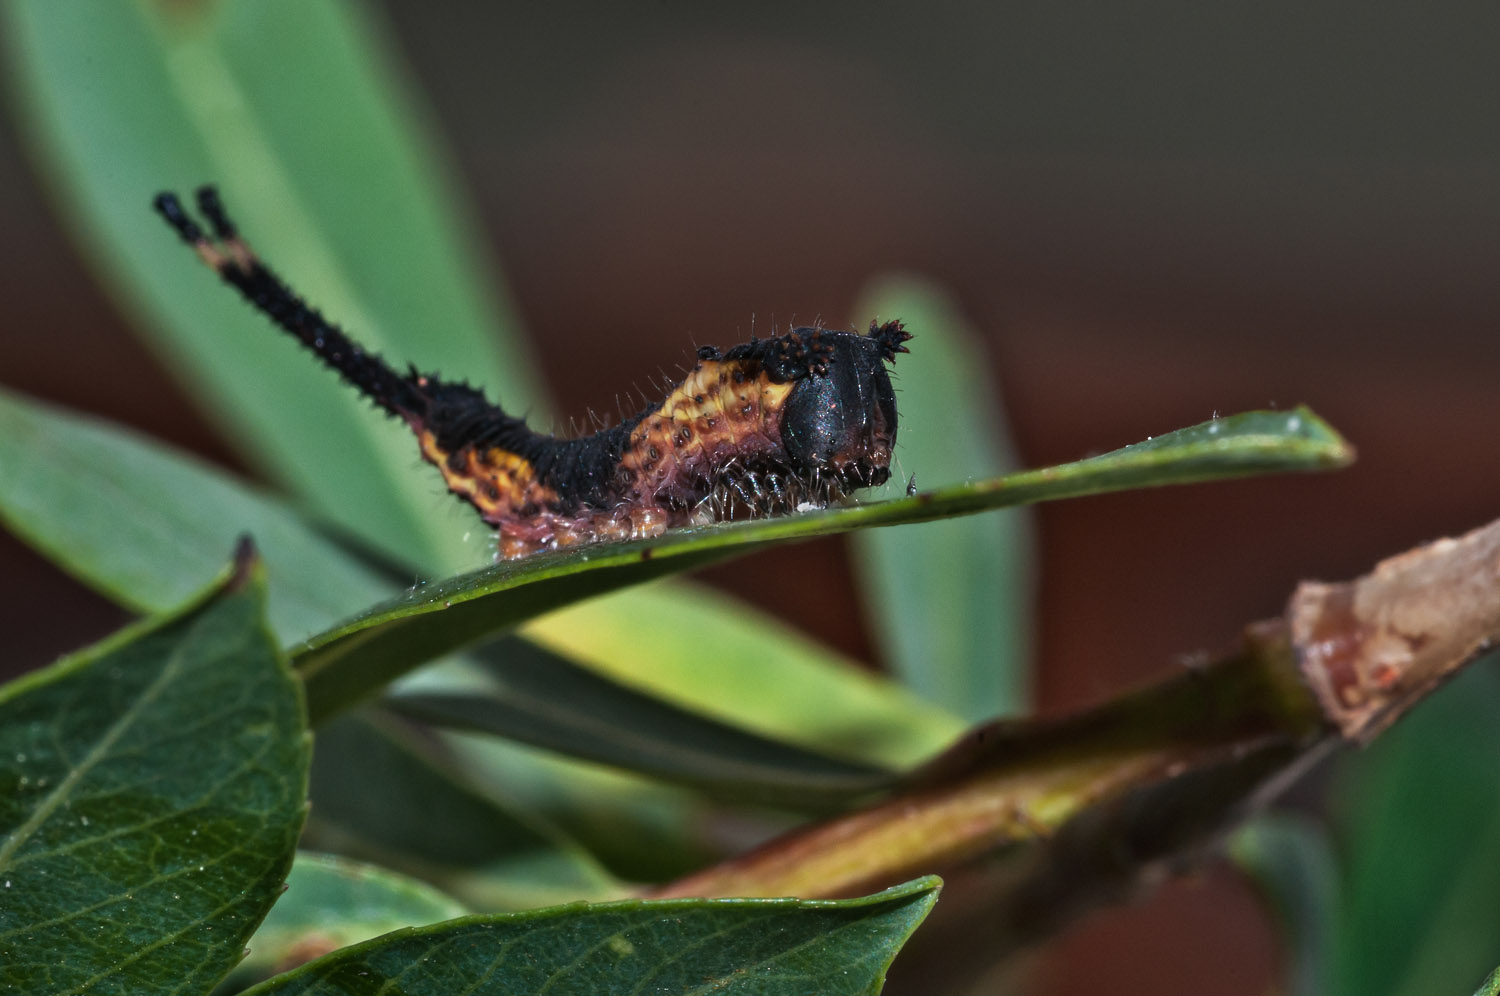 Puss Moth caterpillar after the 2nd ecdysis